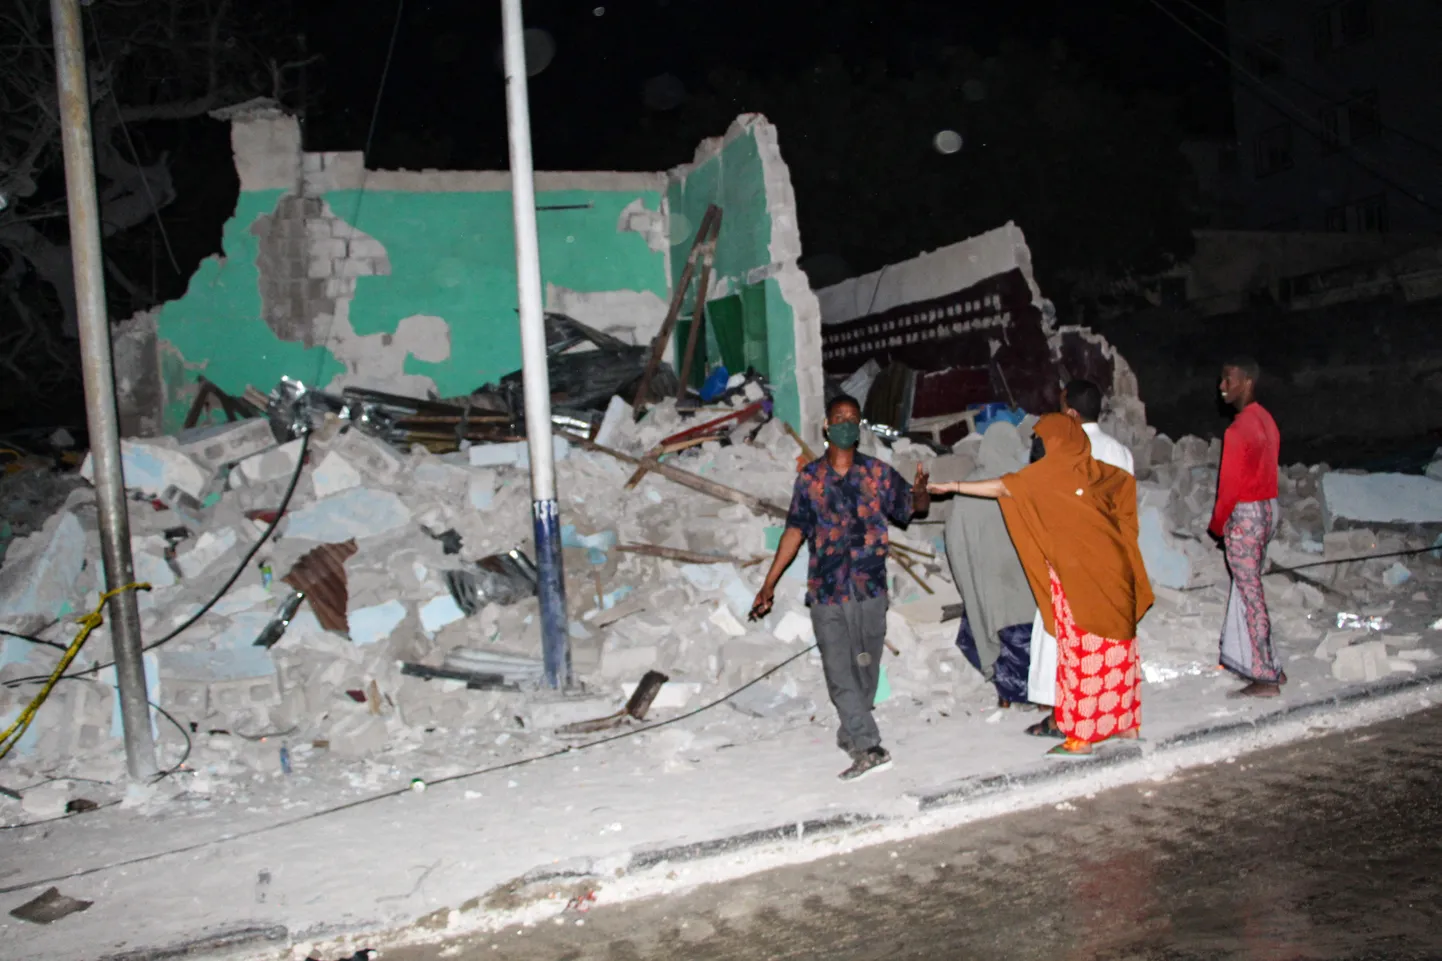 Iedzīvotāji pie "Al-Shabaab" grupējuma iznīcinātas mājas Somālijā